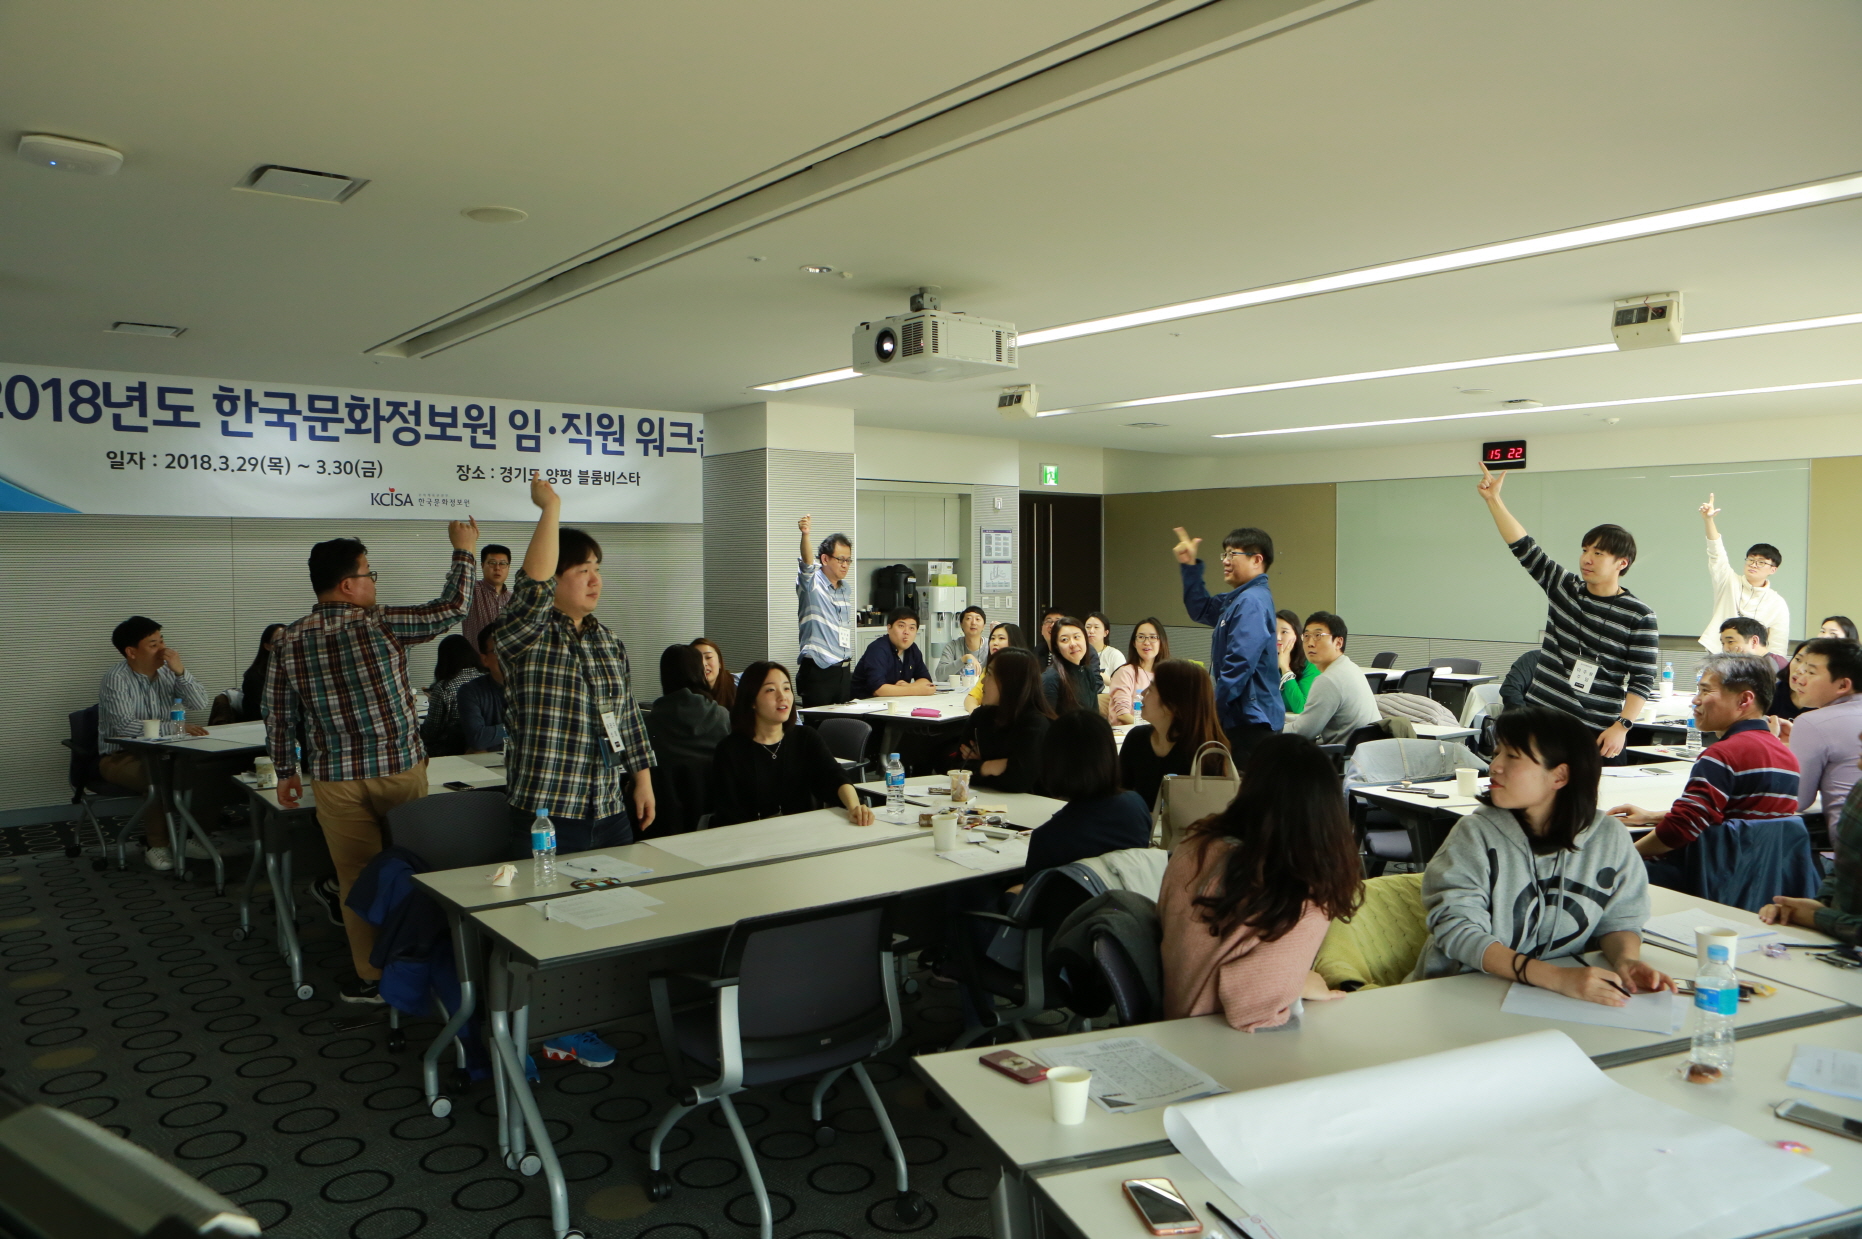 2018년도 한국문화정보원 임직원 워크숍 프로그램 활동 사진